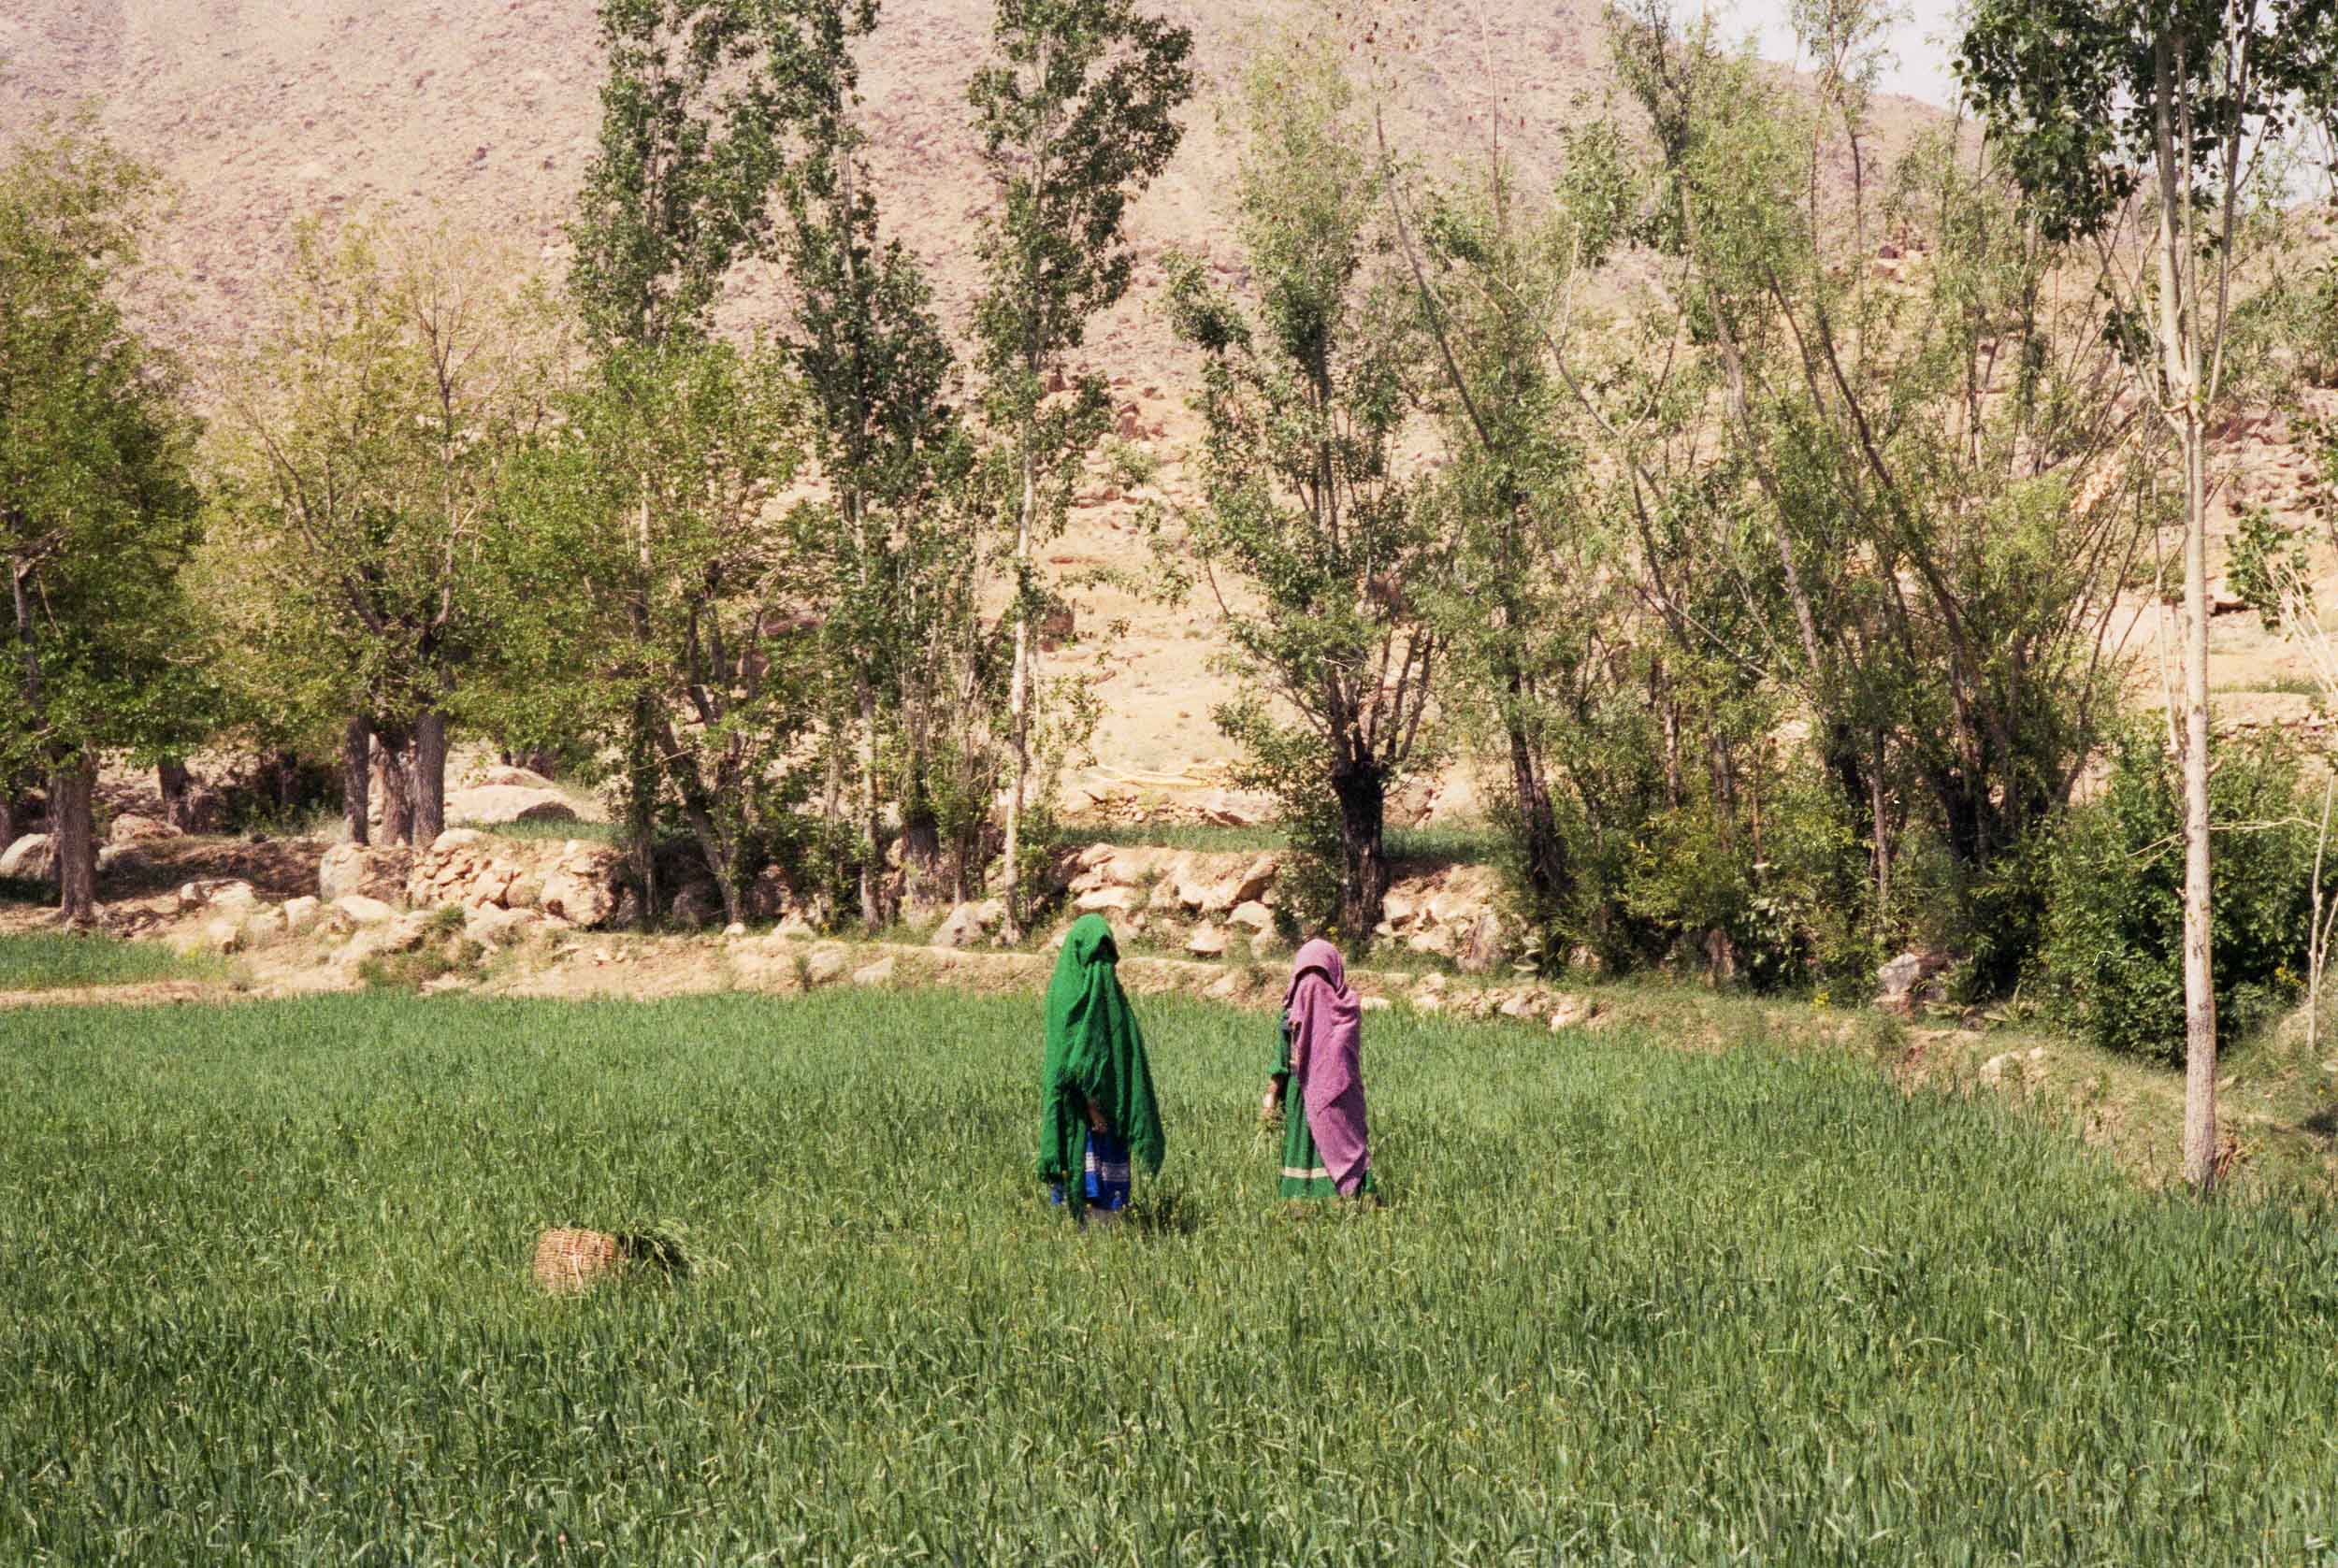 Two Women in a Field. Afghanistan 1988